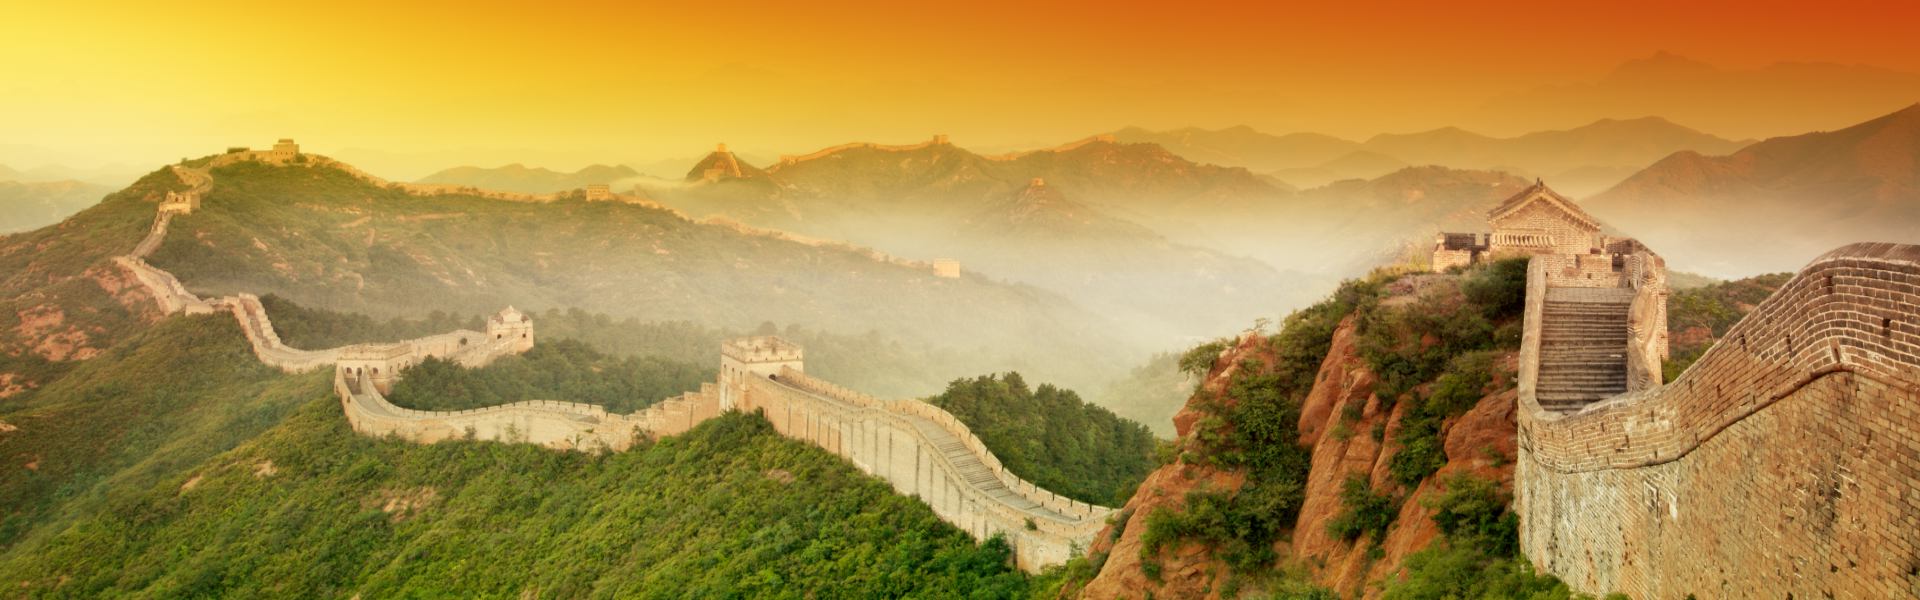 Великая китайская стена с боку